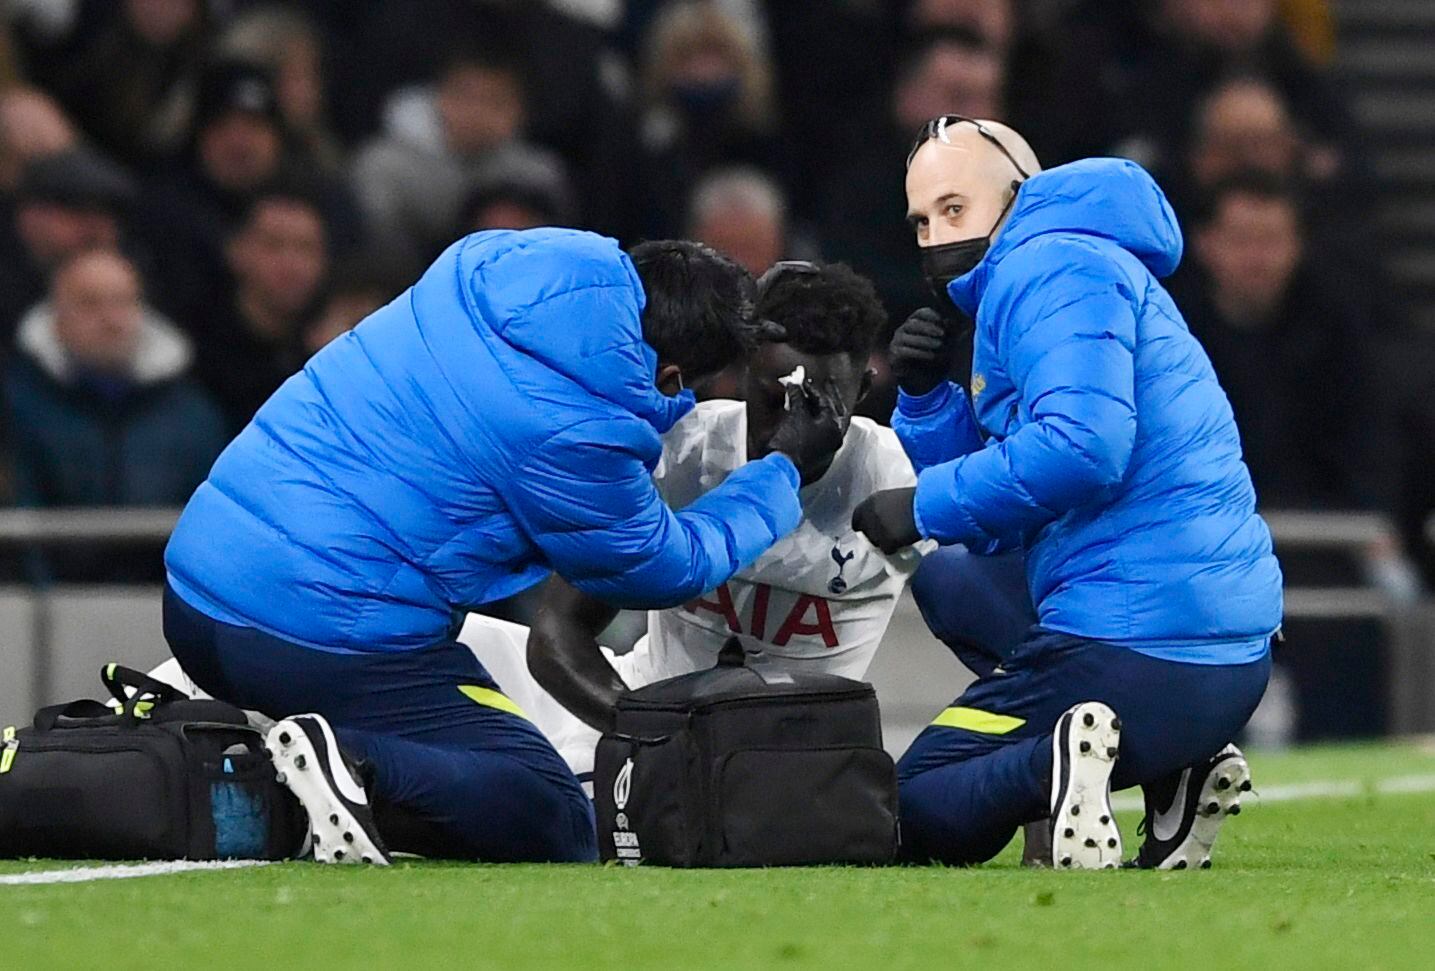 Dávinson Sánchez recibiendo asistencia médica contra Vitesse tras un golpe en  su cabeza / (REUTERS/Tony Obrien)